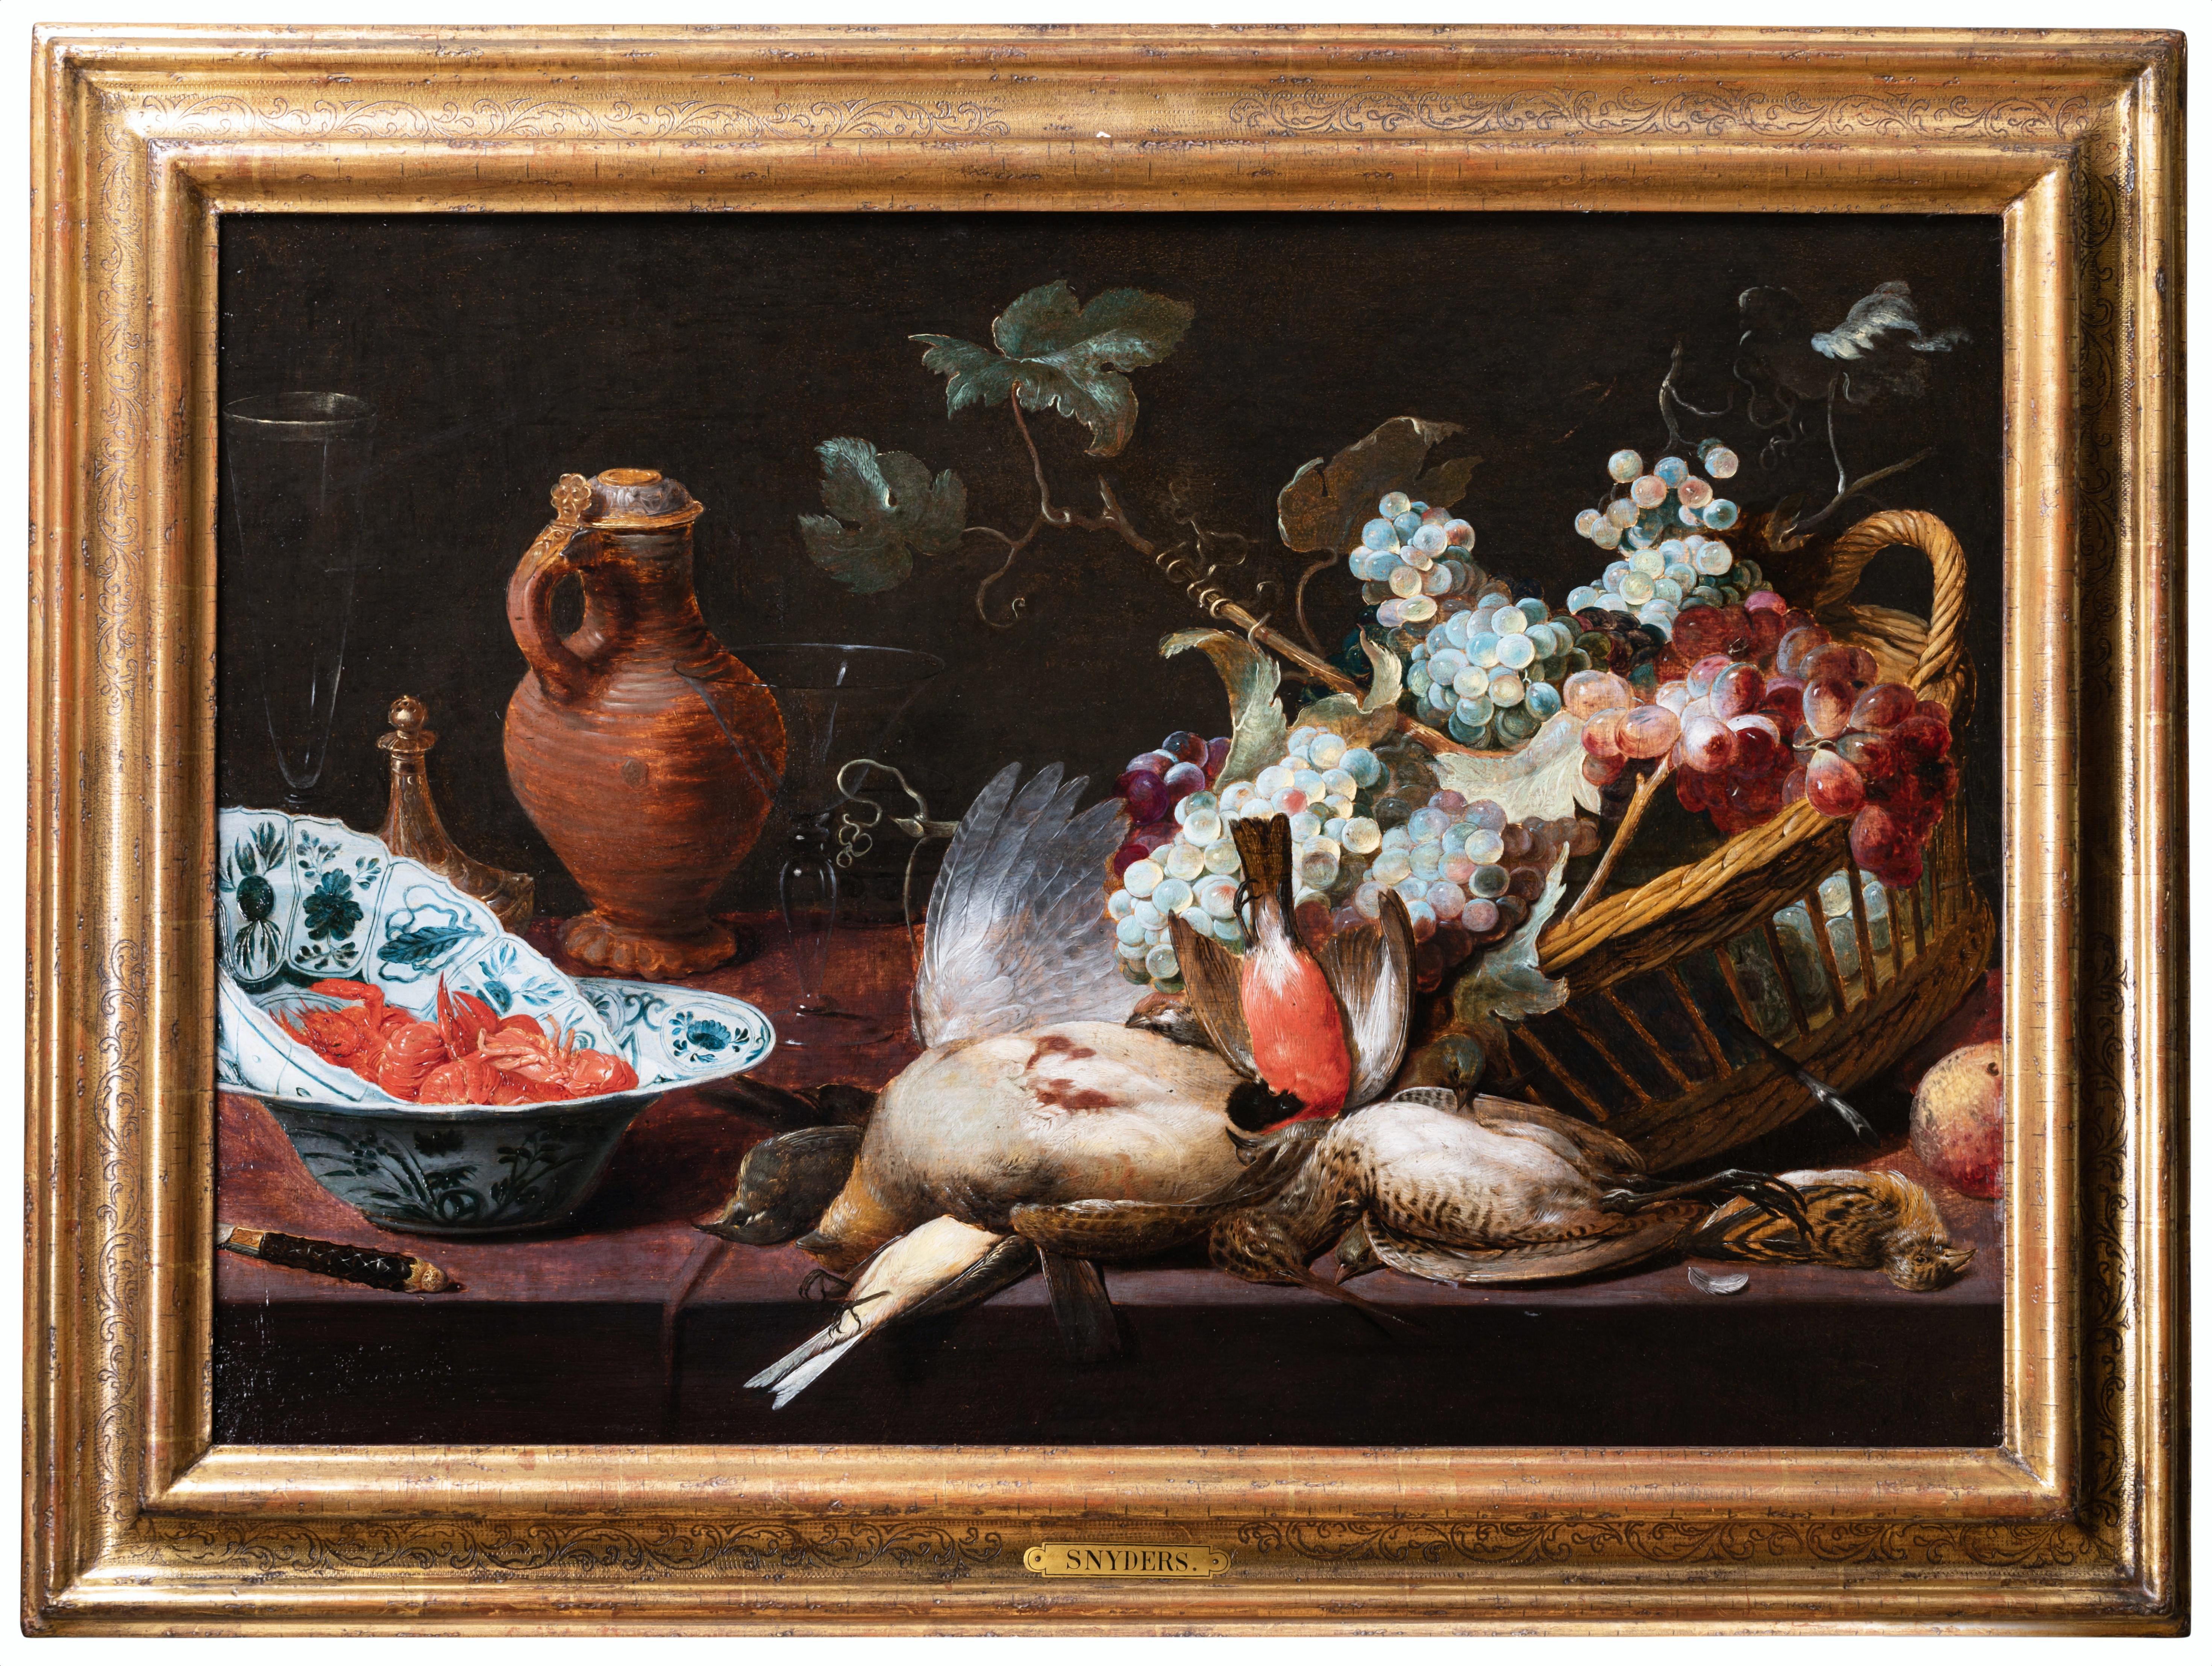 STILLLEBEN MIT VÖGELN UND ROSINEN, WERKSTATT VON FRANS SNYDERS (1579-1657)
Unser exquisites und attraktives Gemälde mit seiner reichen und harmonischen Komposition ist eines der bemerkenswertesten Beispiele für die Leidenschaft der Kunstliebhaber